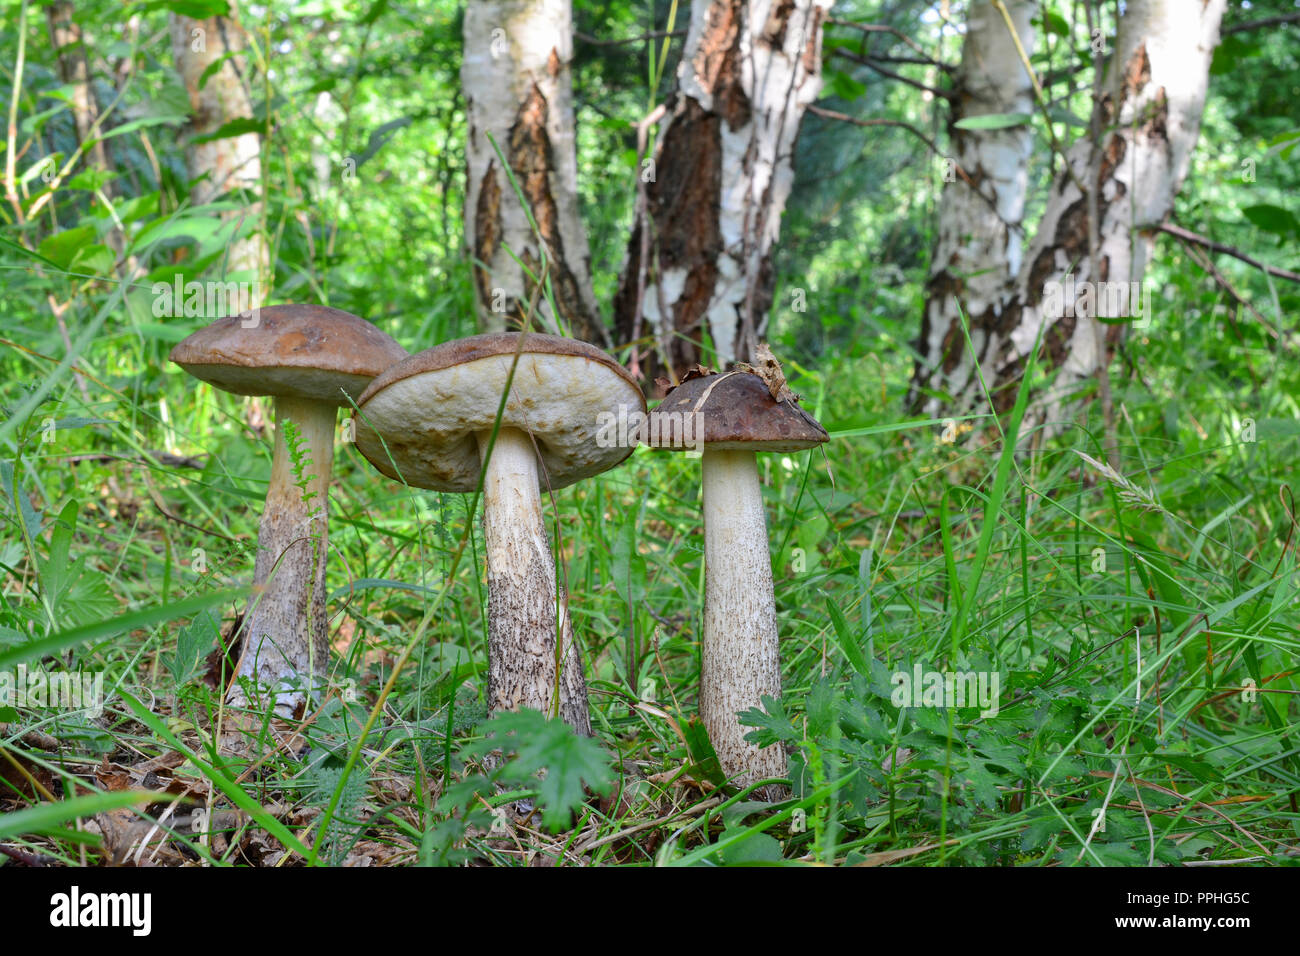 Groupe de trois champignons bolets bouleau brun ou dans le Guide des champignons habitat naturel, forêt de bouleaux Banque D'Images